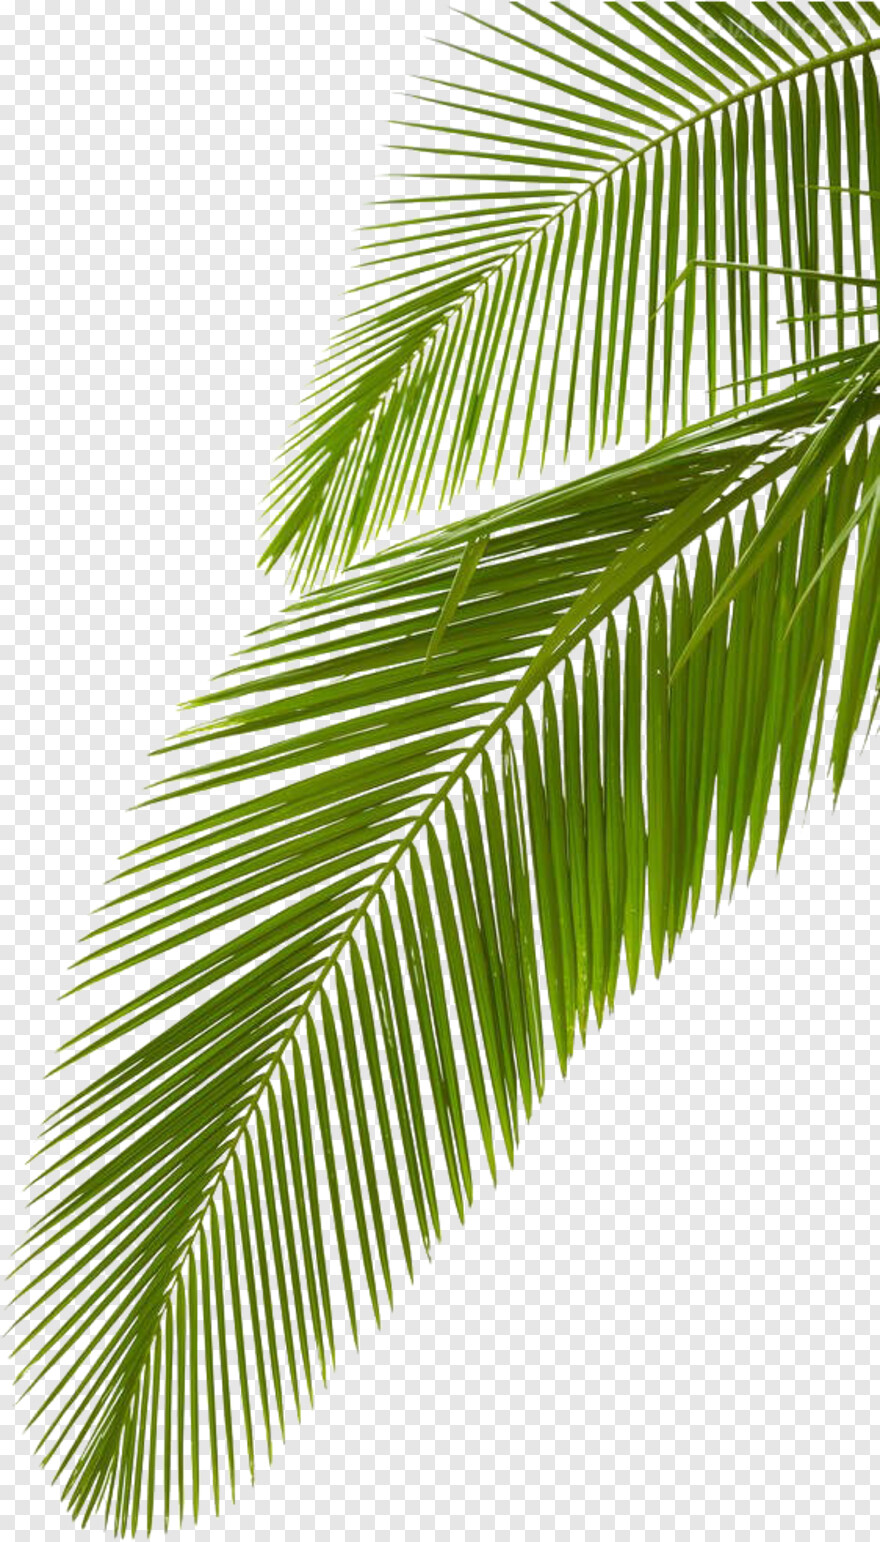 palm-tree-silhouette # 315051